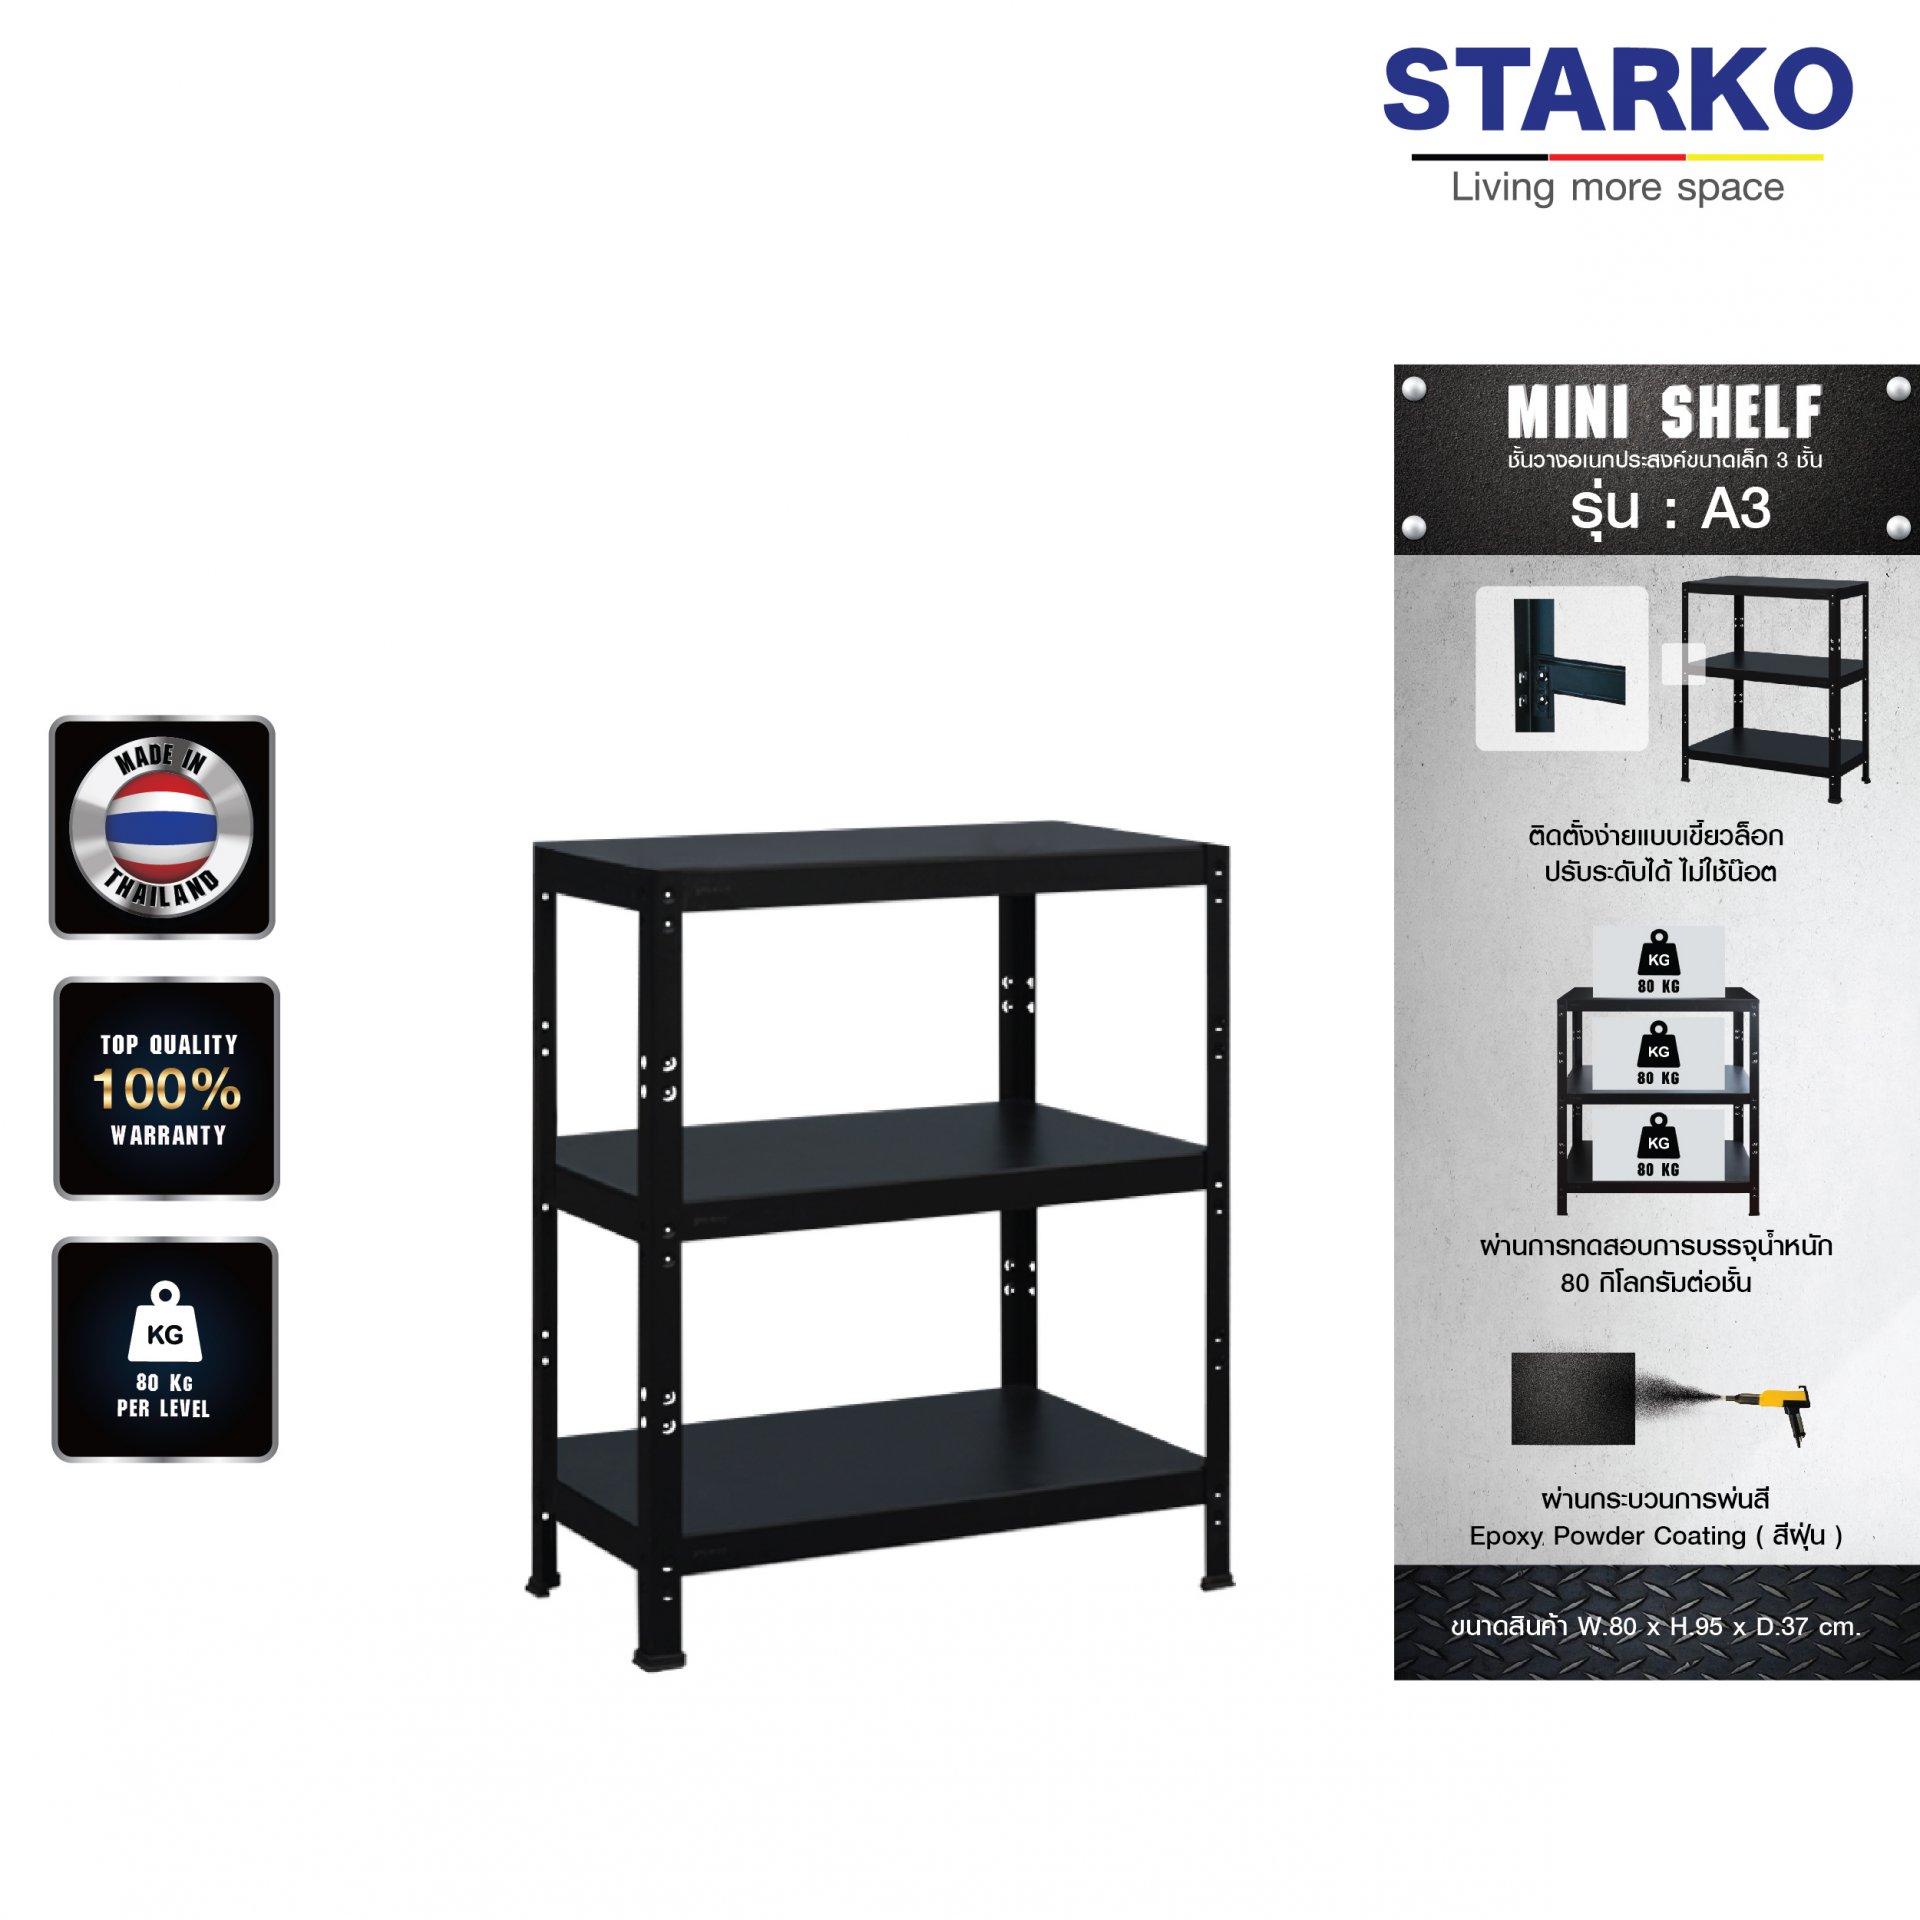 STARKO mini Shelf รุ่น A3 ชั้นเหล็ก ประกอบง่าย ไม่ต้องง้อน็อต ขนาด 3 ชั้น รับน้ำหนักได้ 80 KG. ต่อชั้น